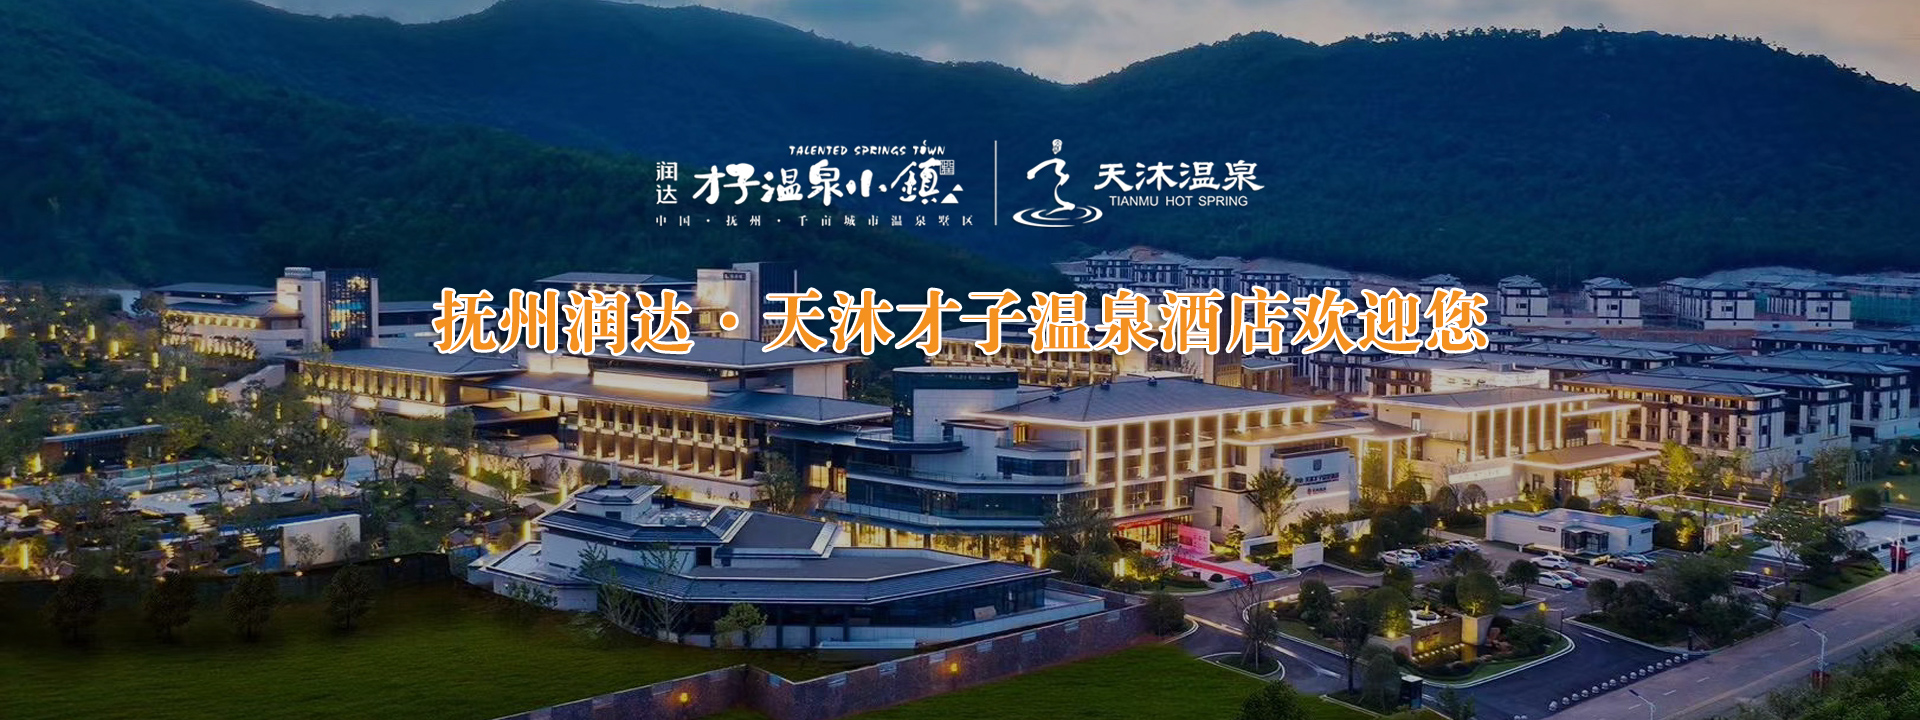 抚州润达·天沐才子温泉酒店/泡池9月26日正式开业